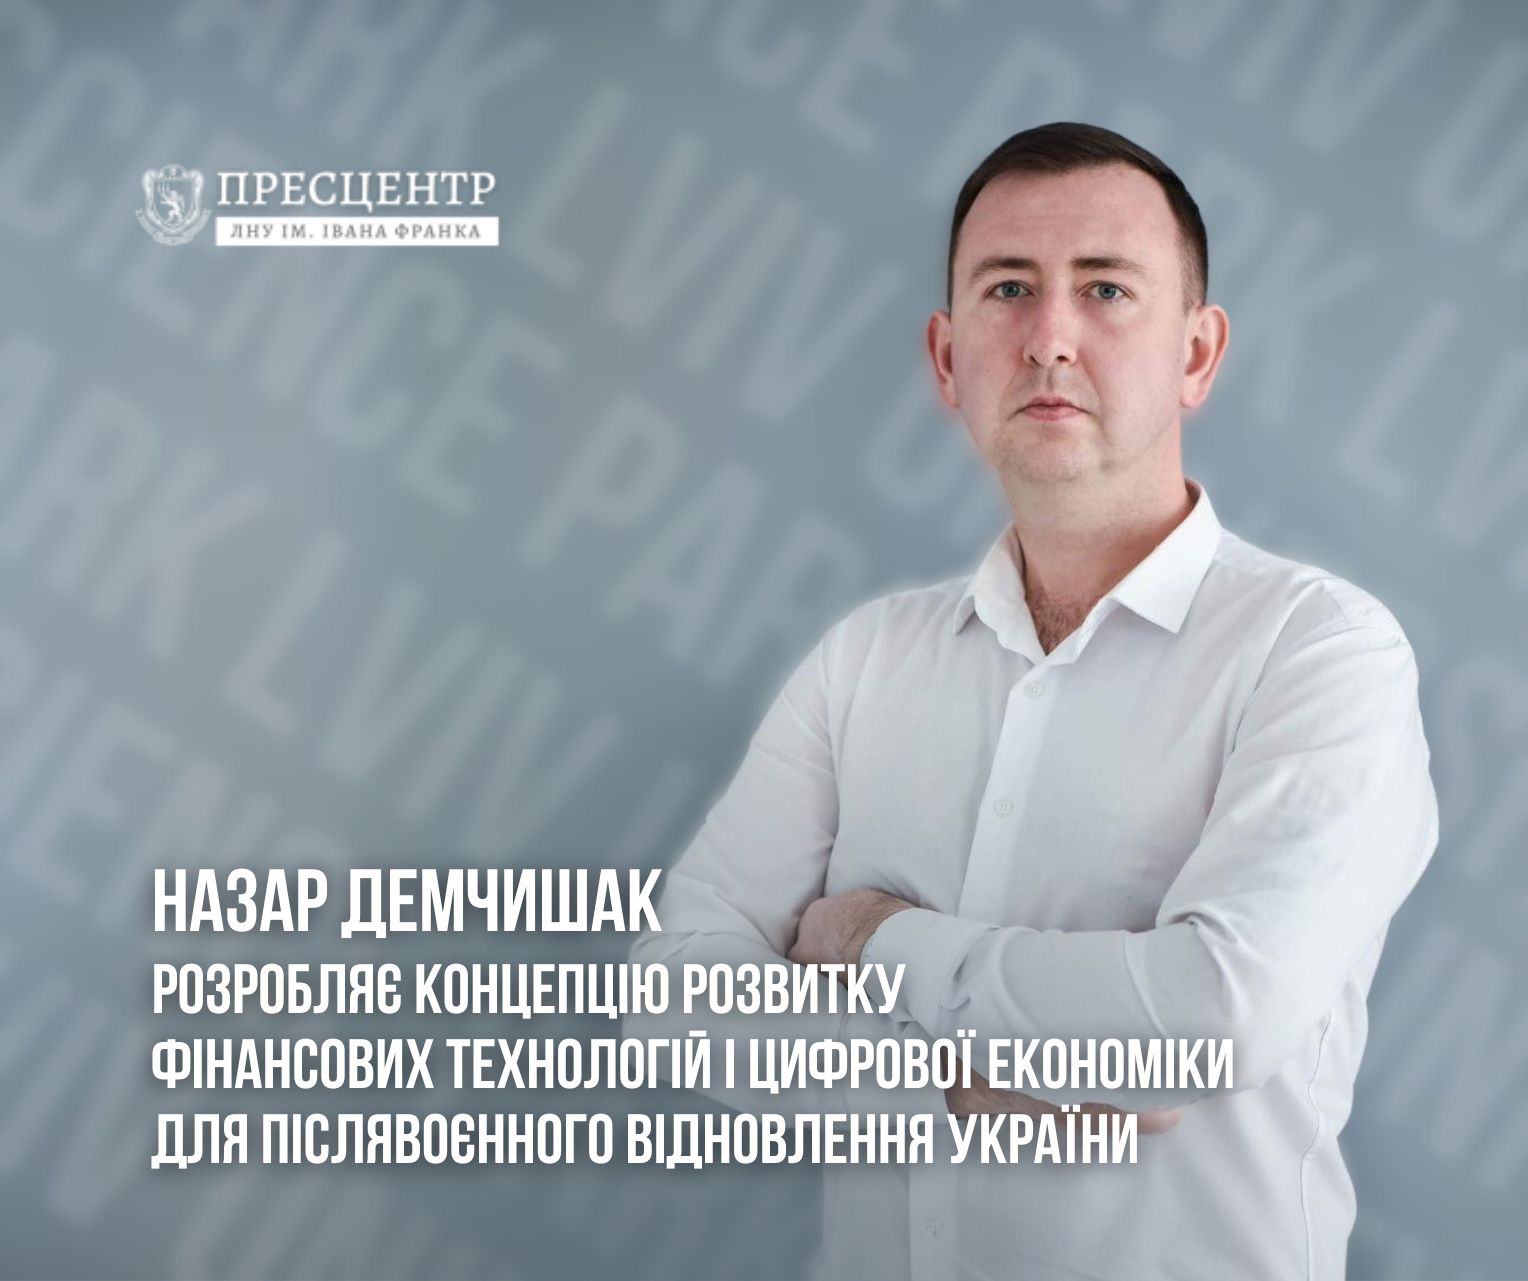 Назар Демчишак розробляє концепцію розвитку фінансових технологій і цифрової економіки для післявоєнного відновлення України